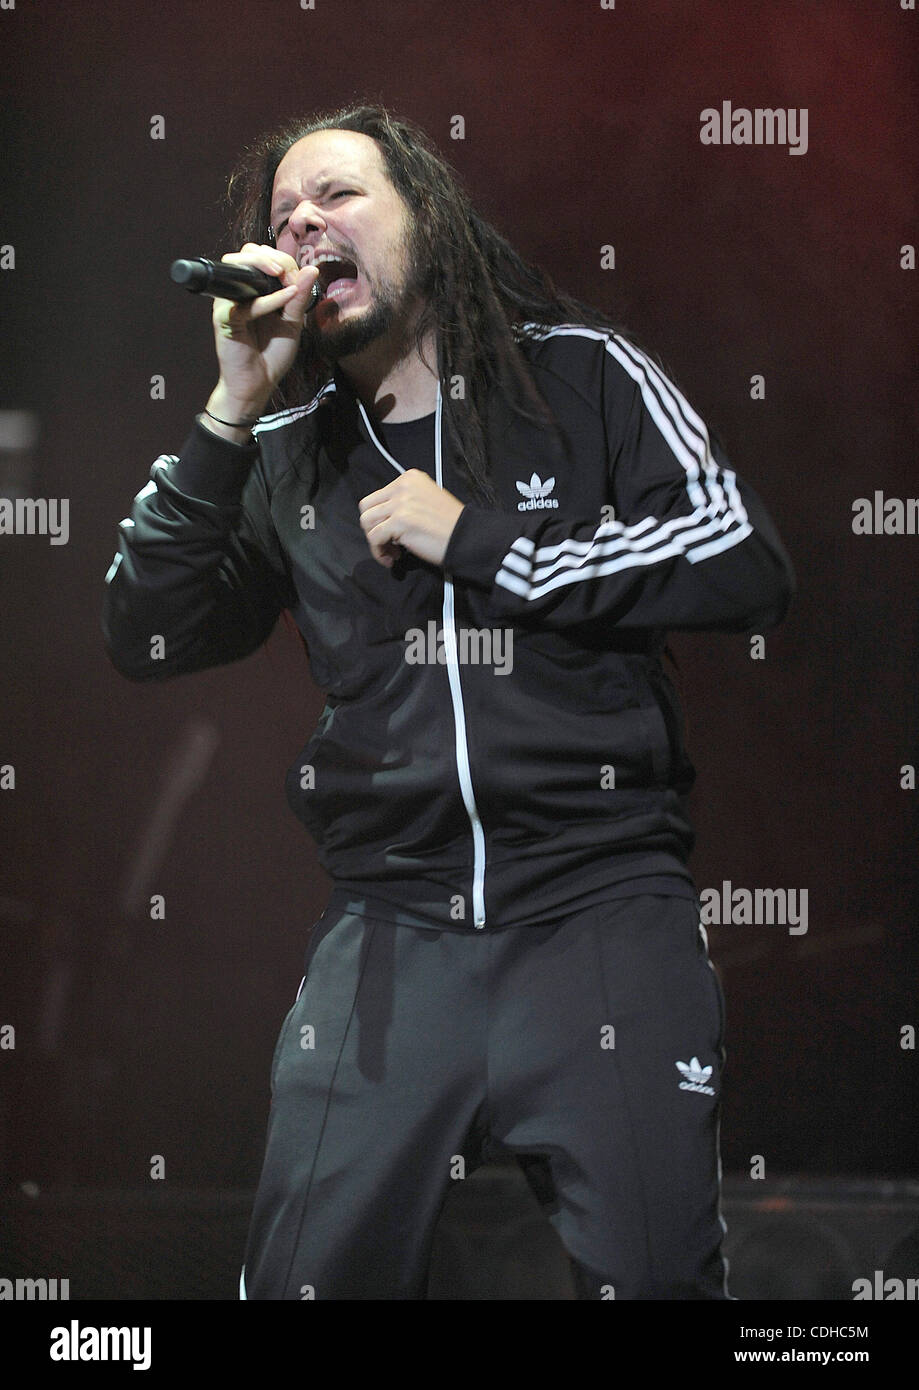 Febrero 2, 2011 Fayetteville, Carolina del Norte, EE.UU. - El cantante Jonathan Davis de Korn la banda realiza en como parte de la música como un arma Tour como se